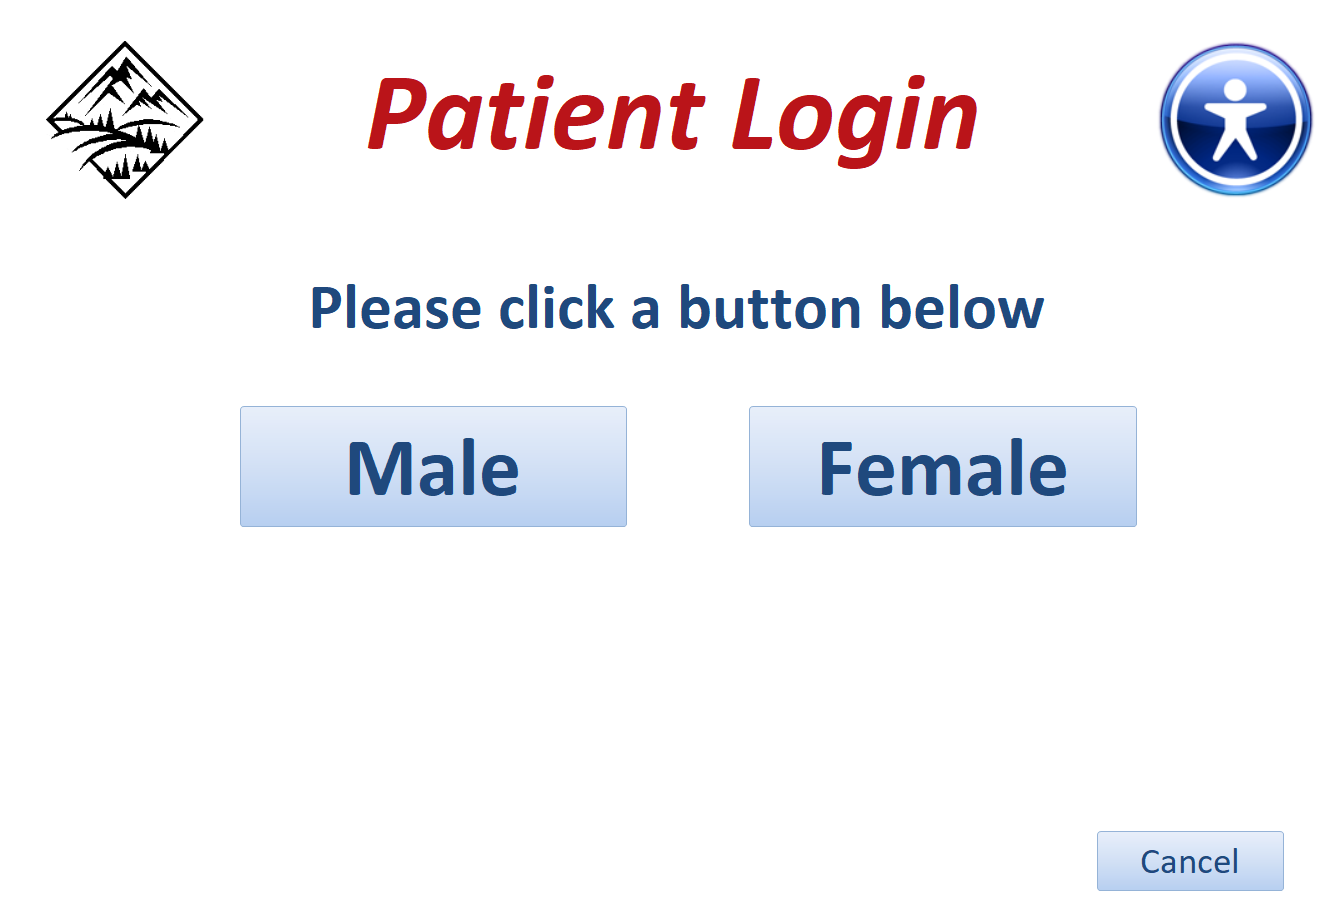 PatientLogin3-Gender